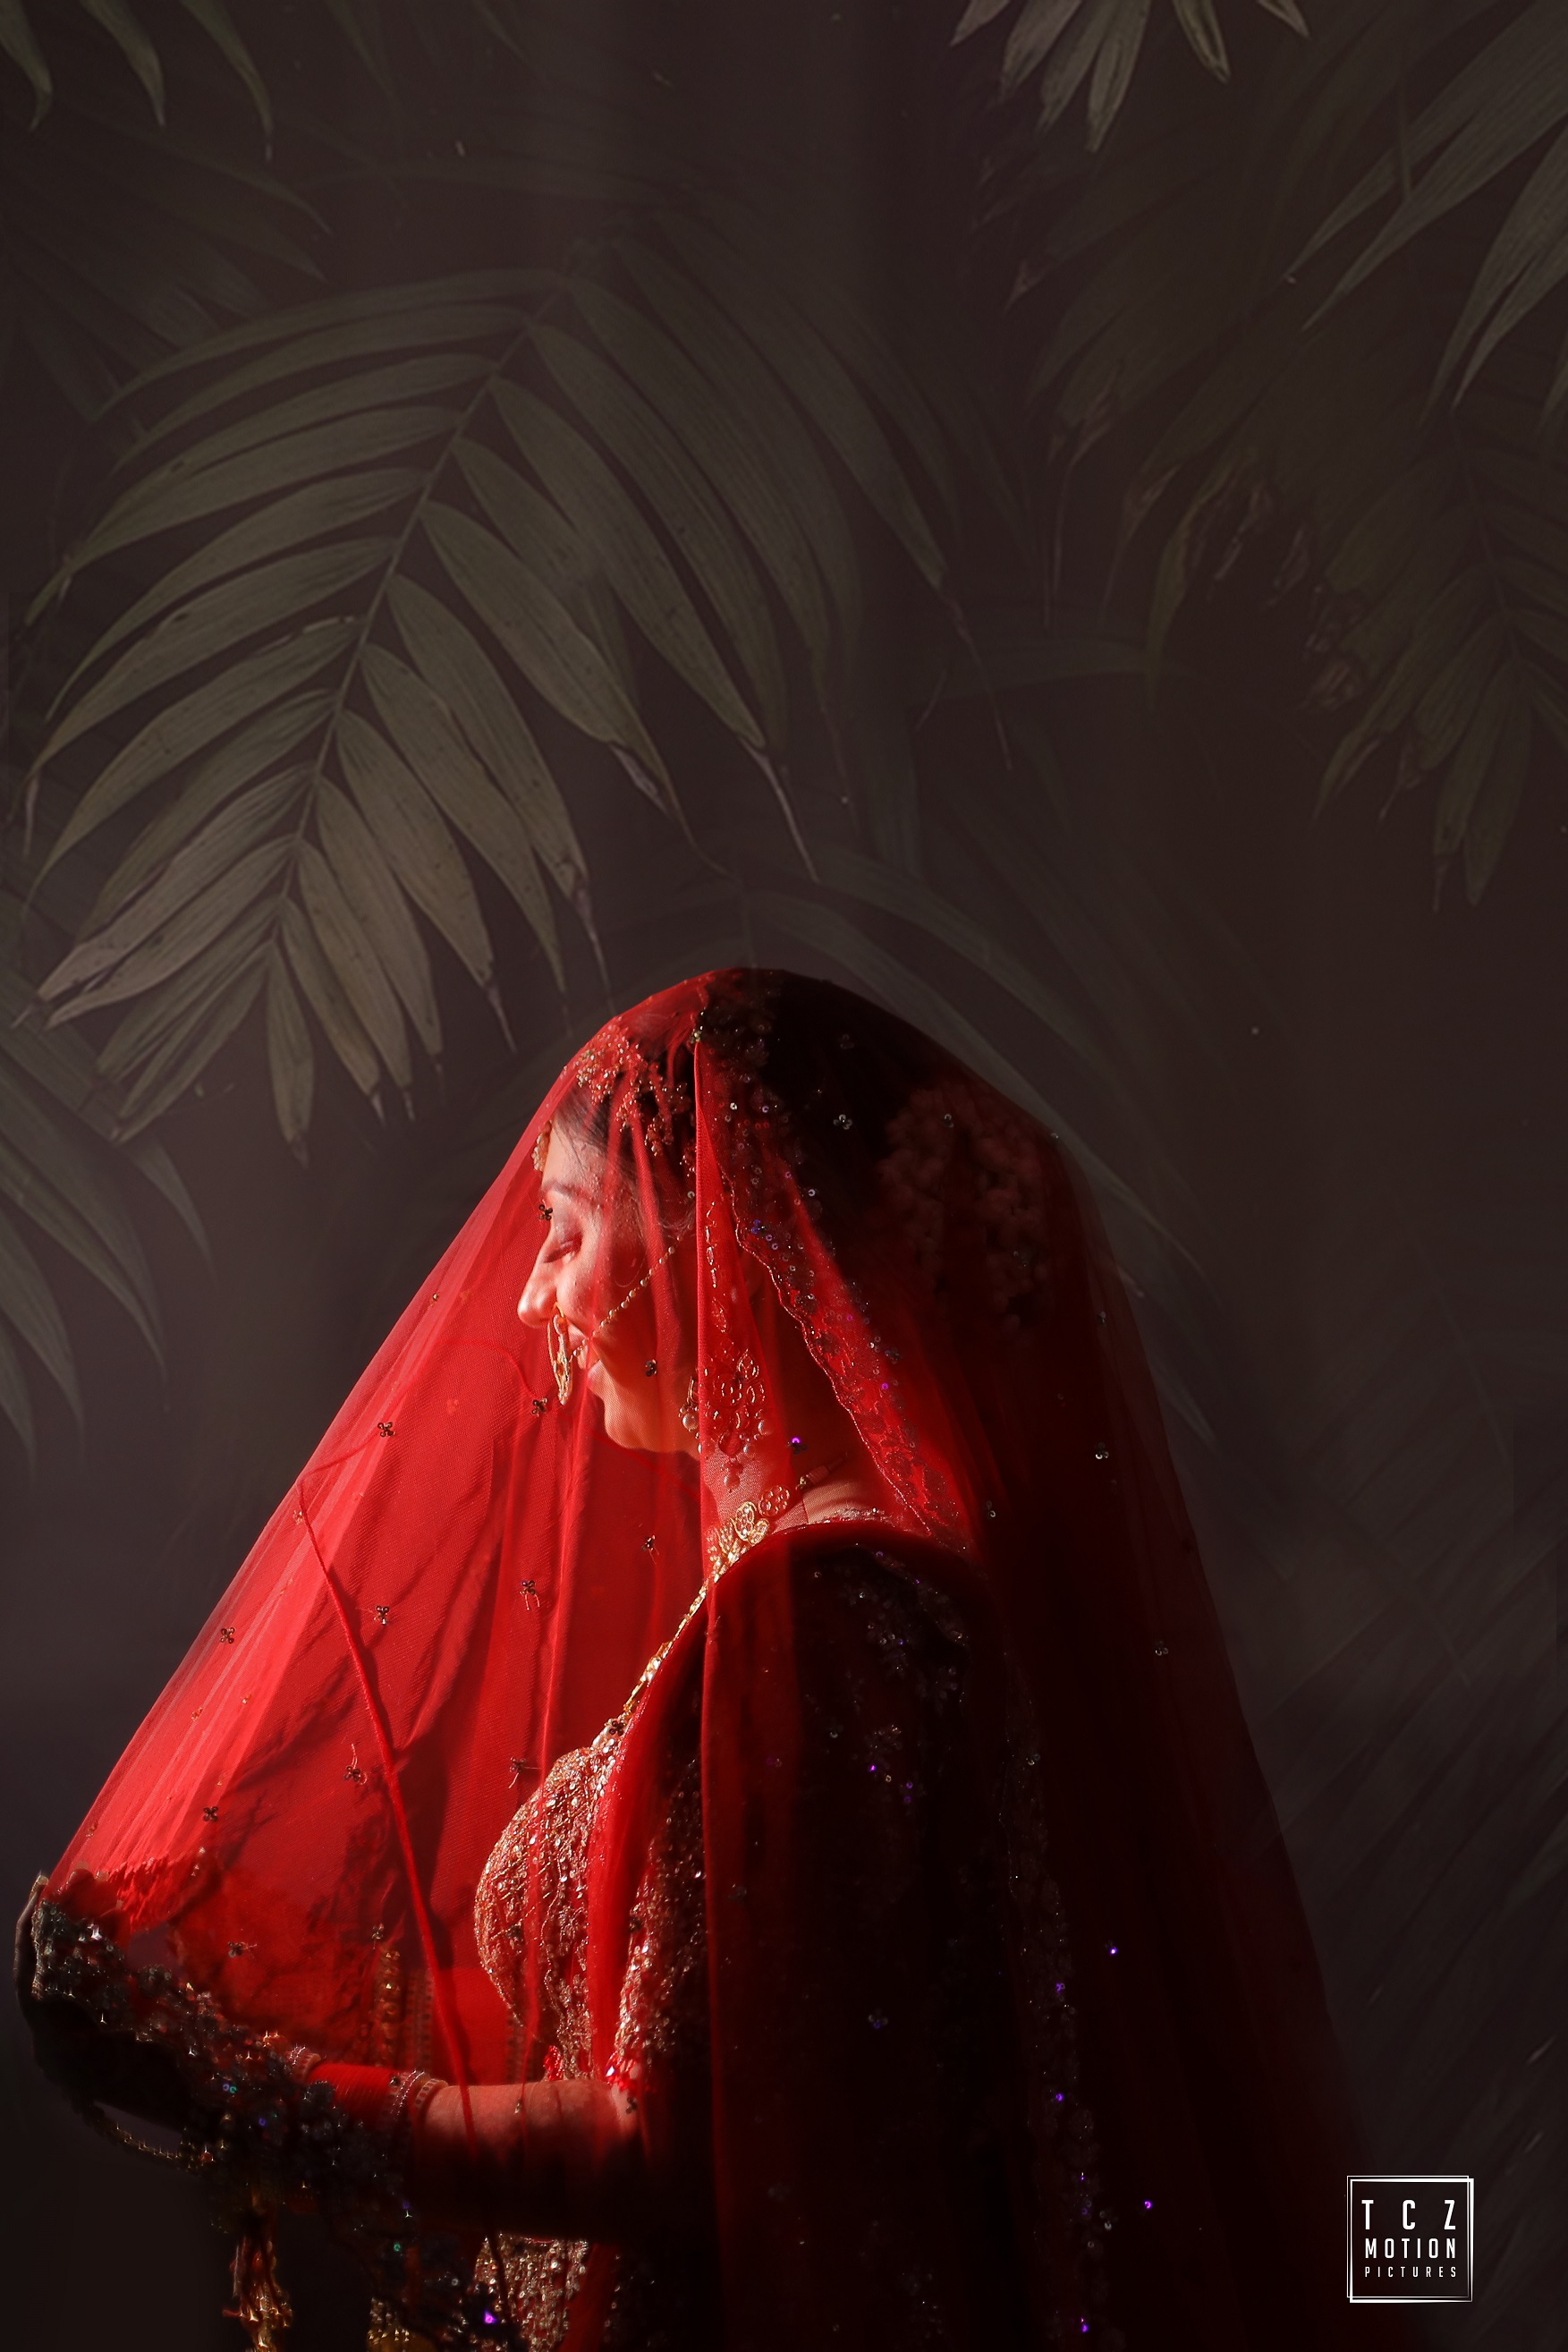 bridal portrait with veil